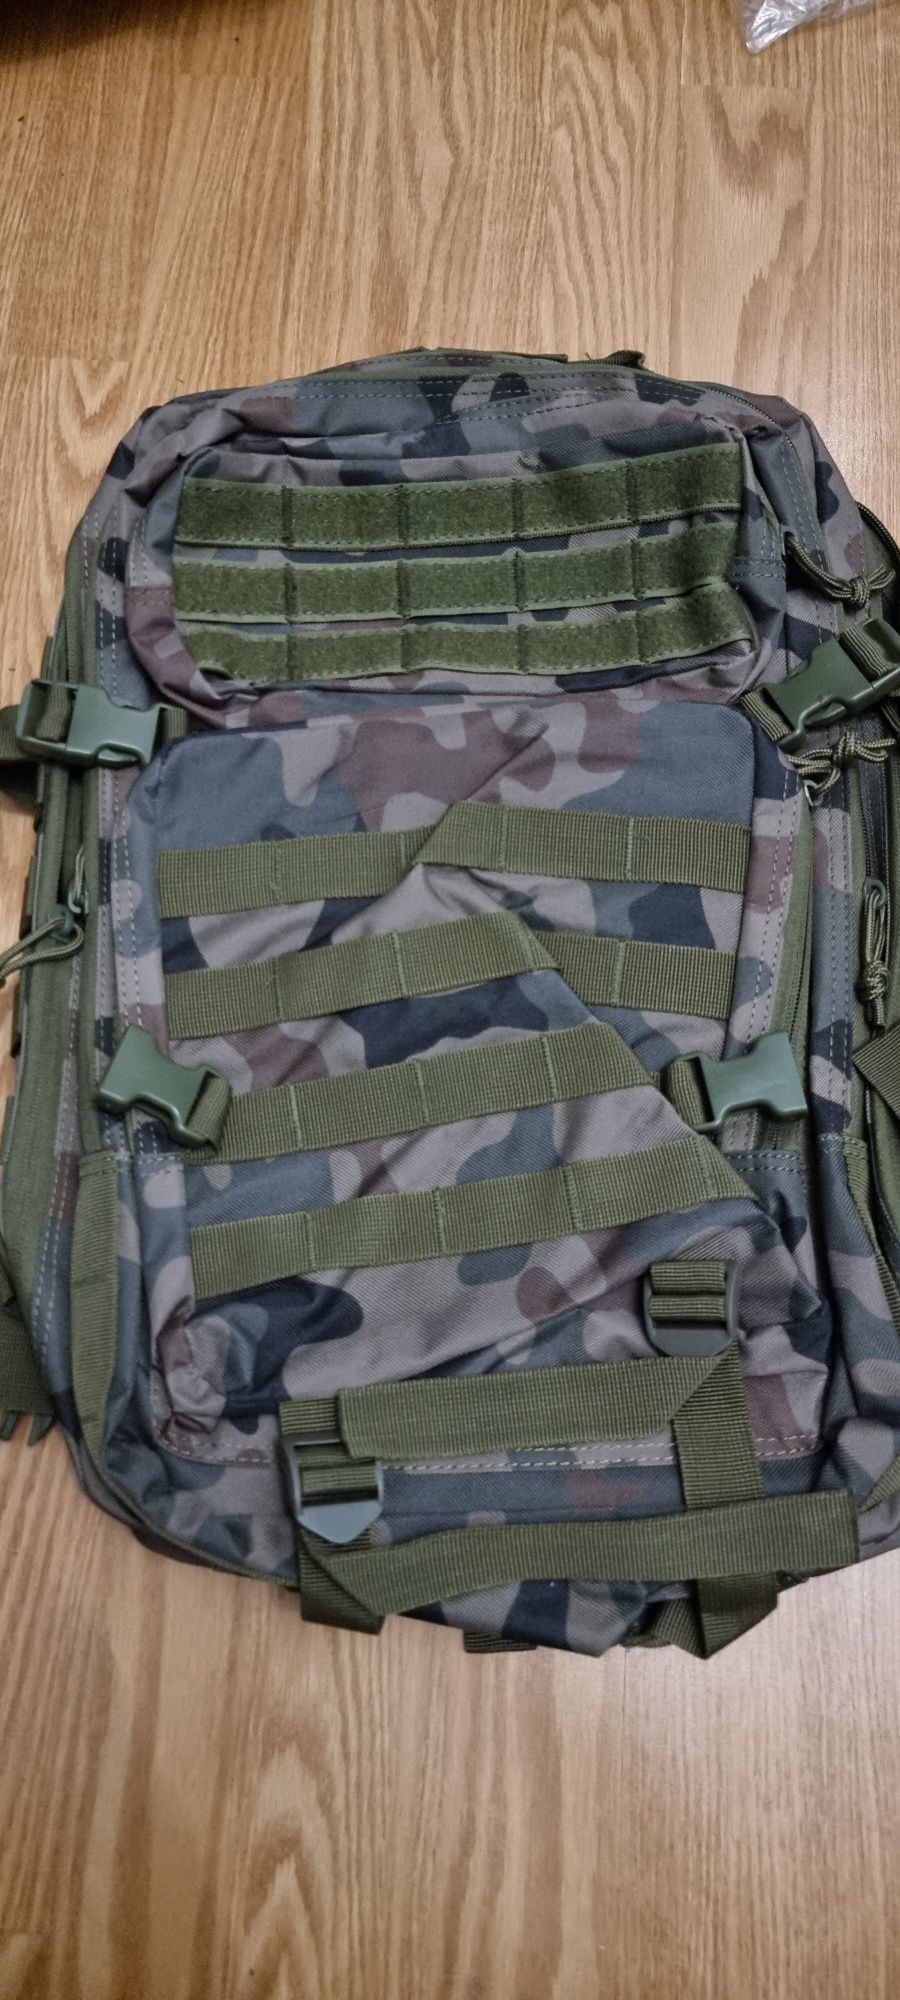 Plecak taktyczny Eko-chot  multicam czarny leśny wojskowy